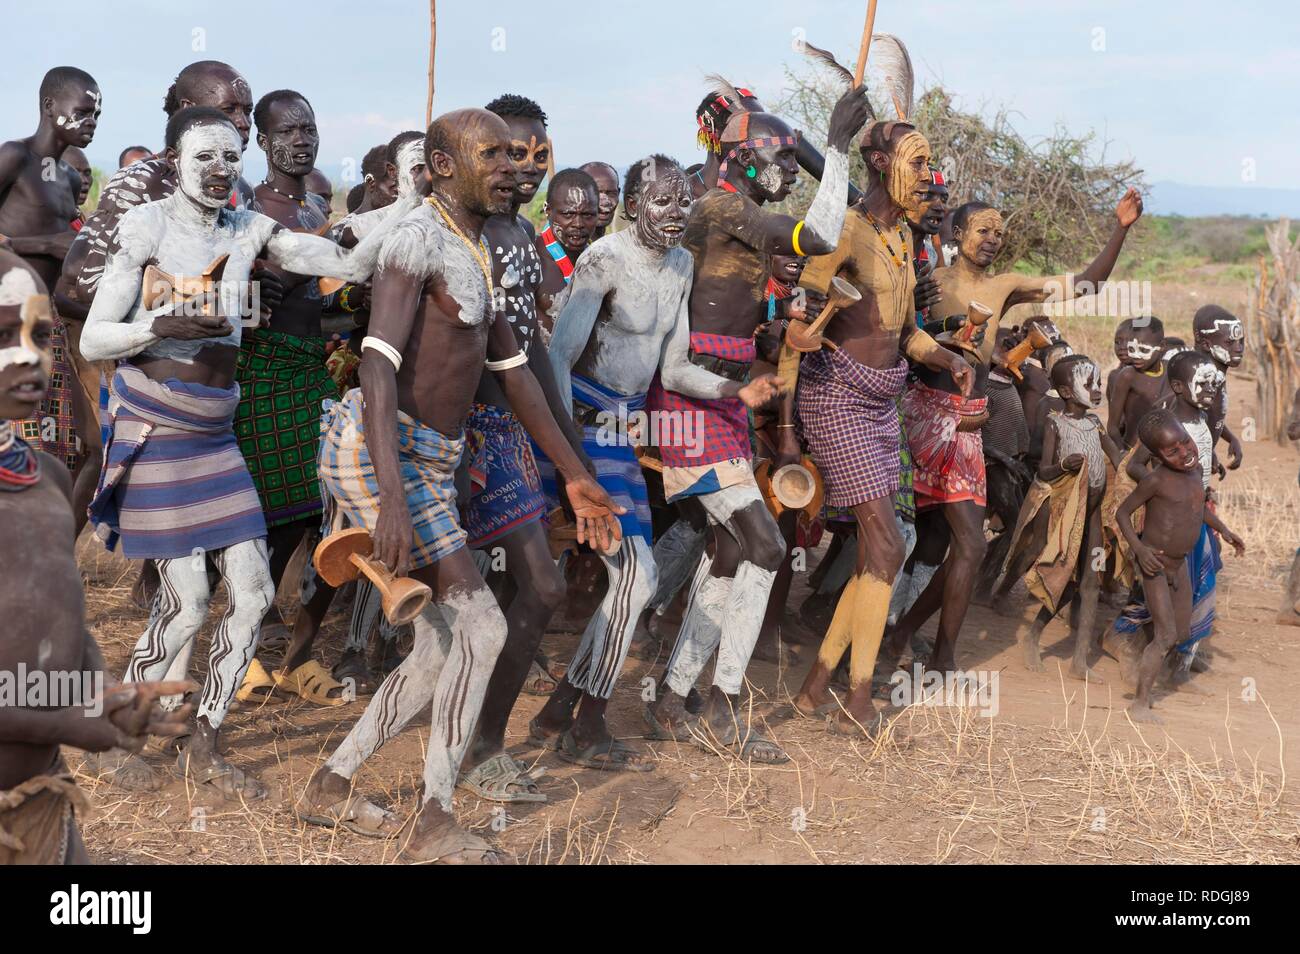 Karo personas con pinturas corporales que participan en una ceremonia de danza tribal, valle del río Omo, en el sur de Etiopía, África Foto de stock